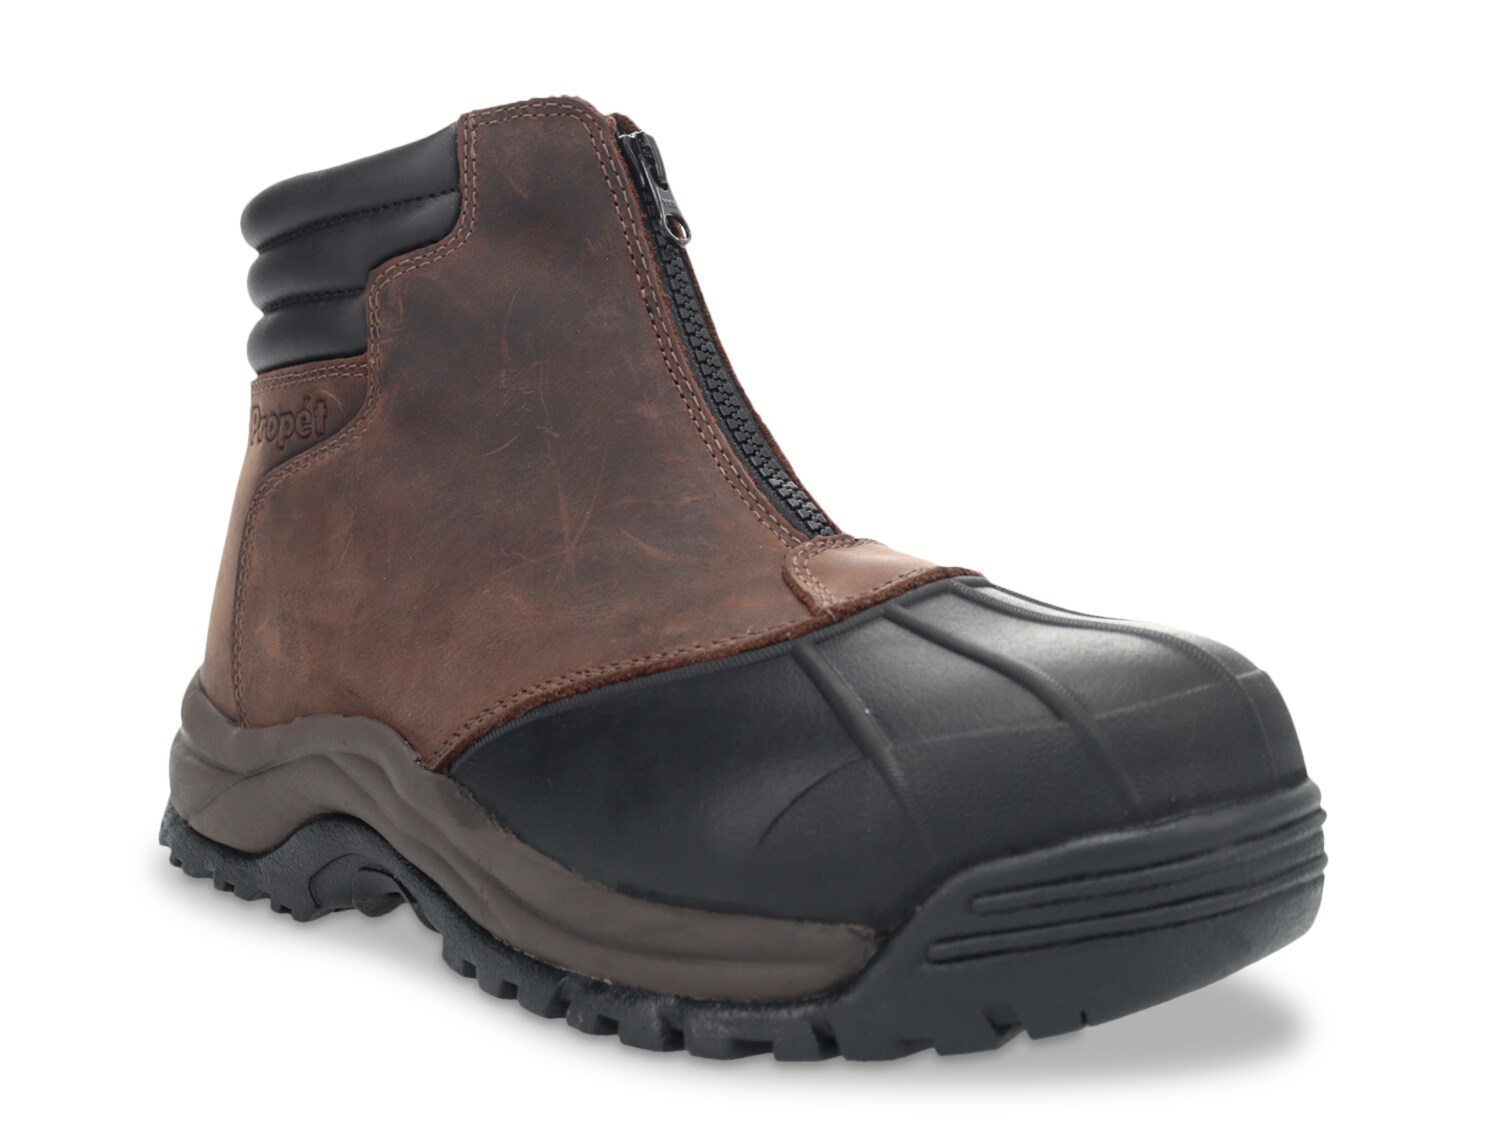 Ботинки Propet Blizzard мужские водонепроницаемые повседневные, темно-коричневый